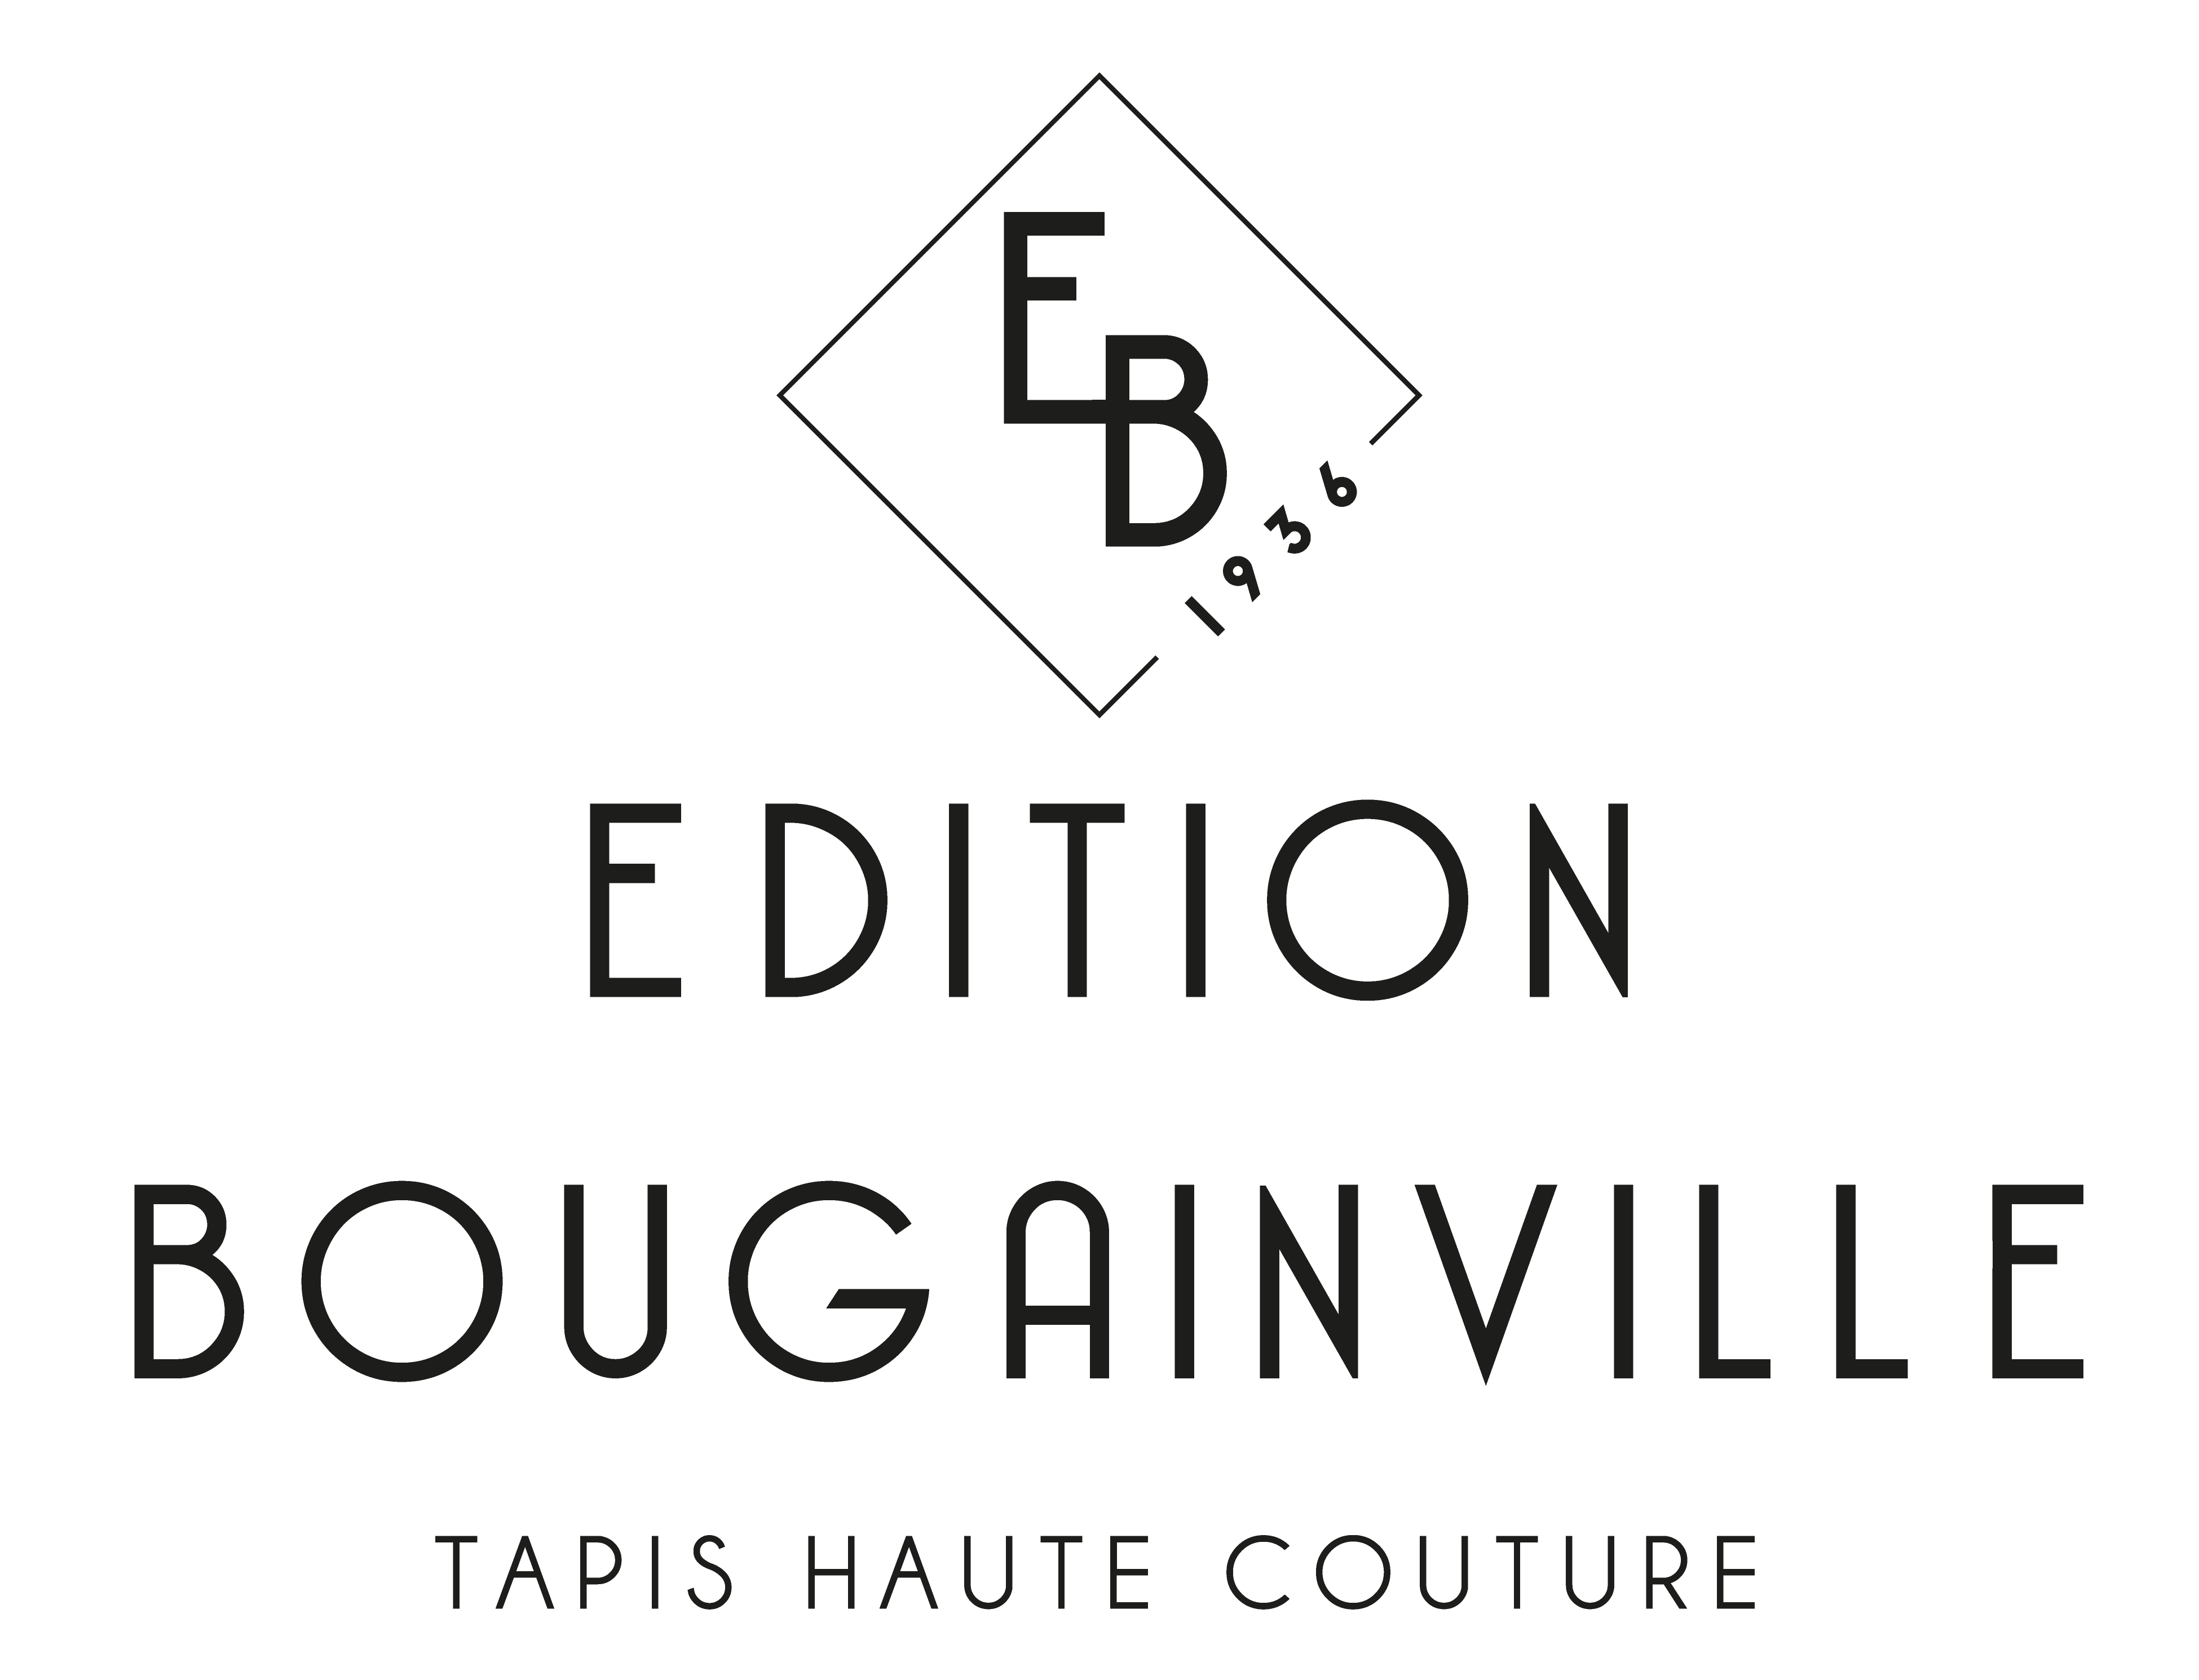 Édition Bougainville